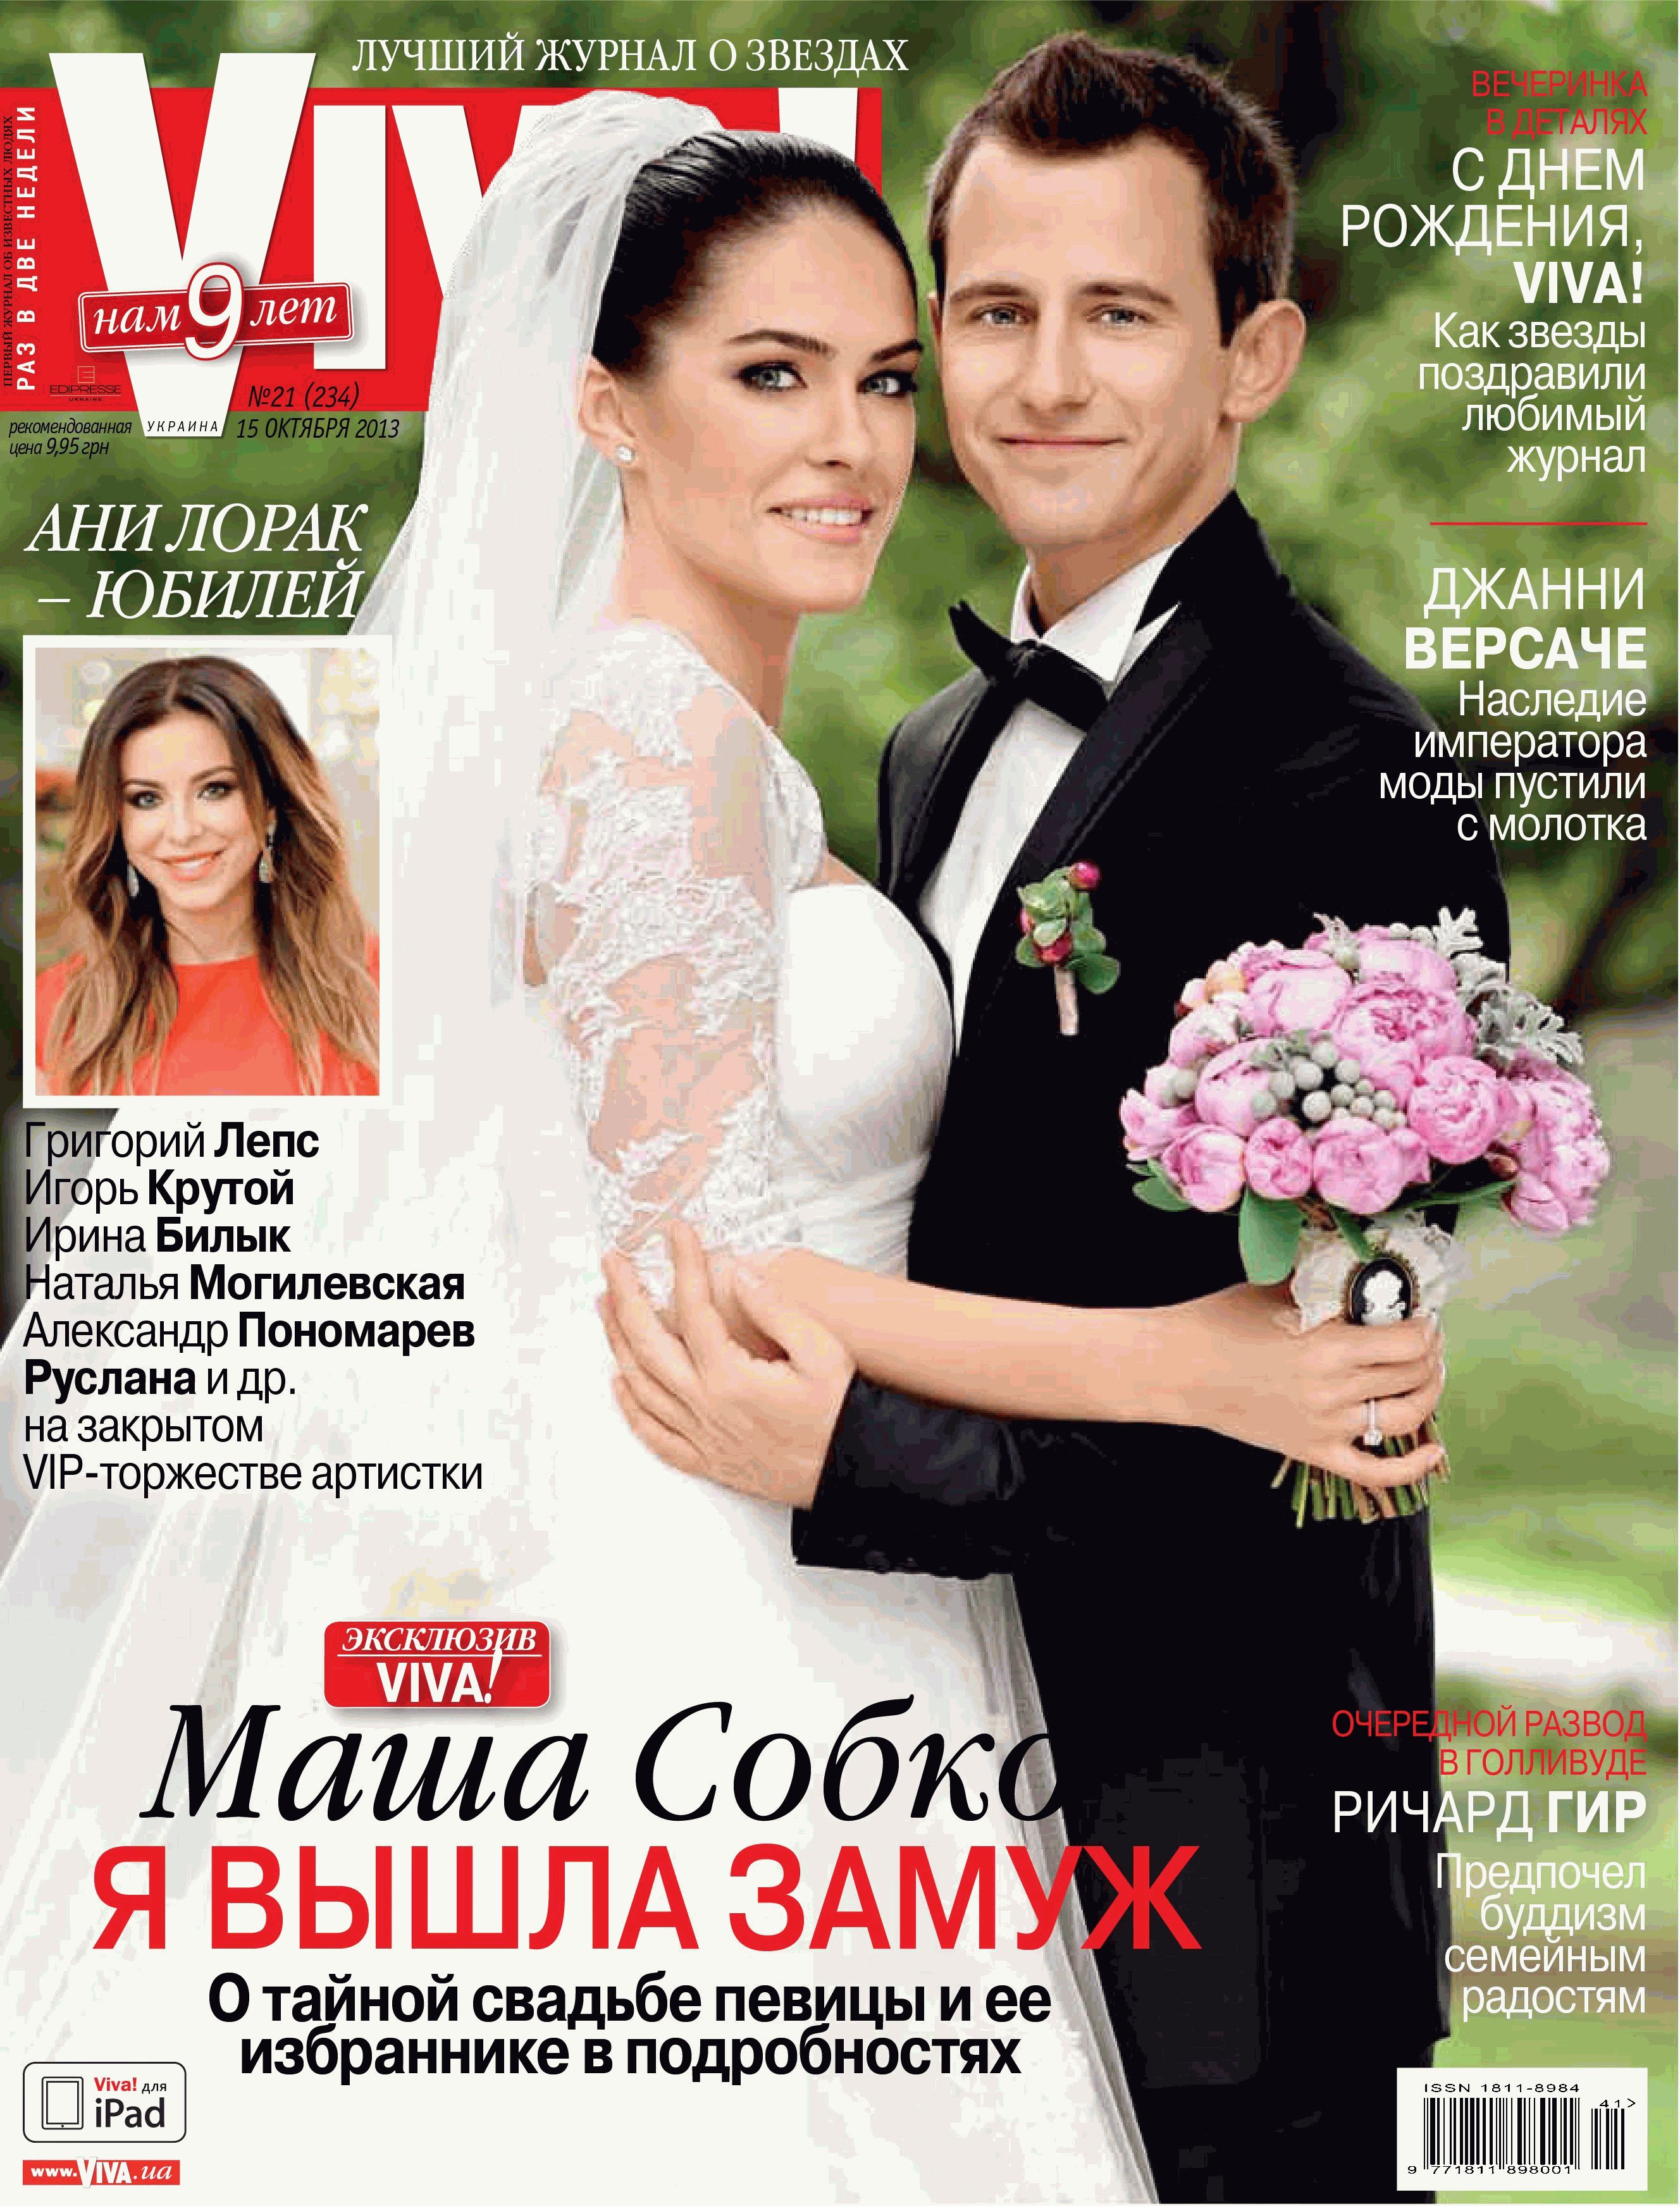 Маша Собко свадьба